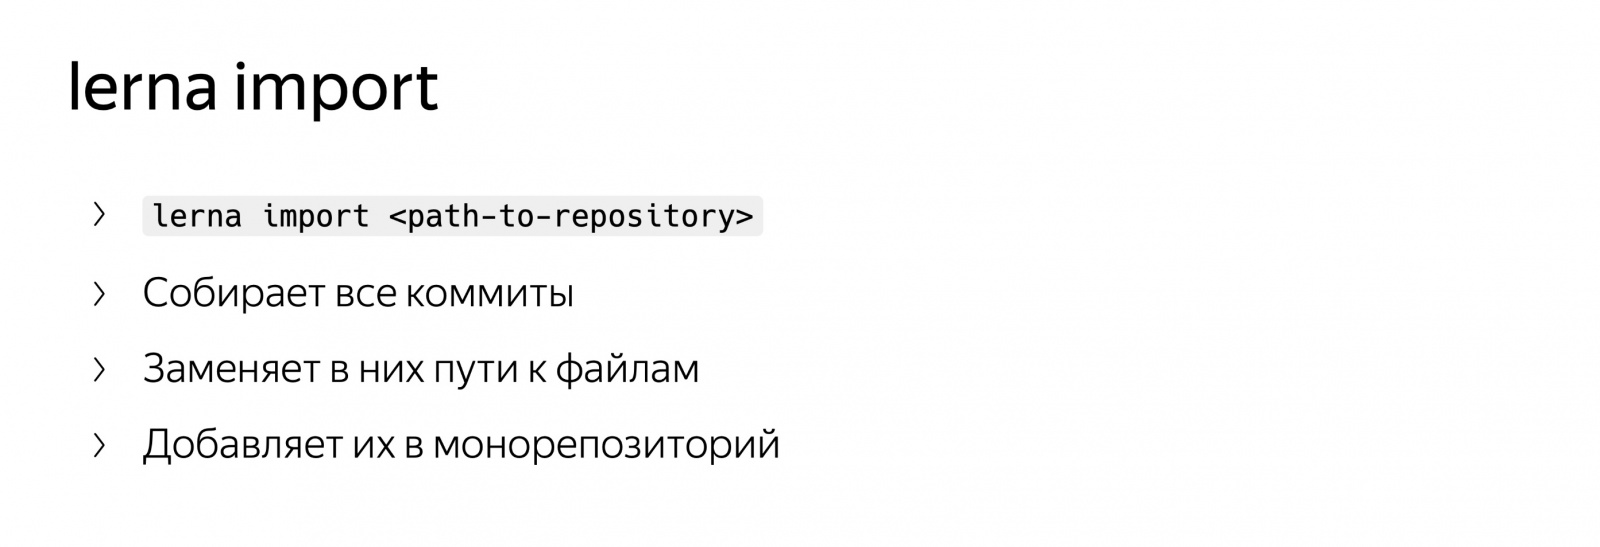 Разработка в монорепозитории. Доклад Яндекса - 6